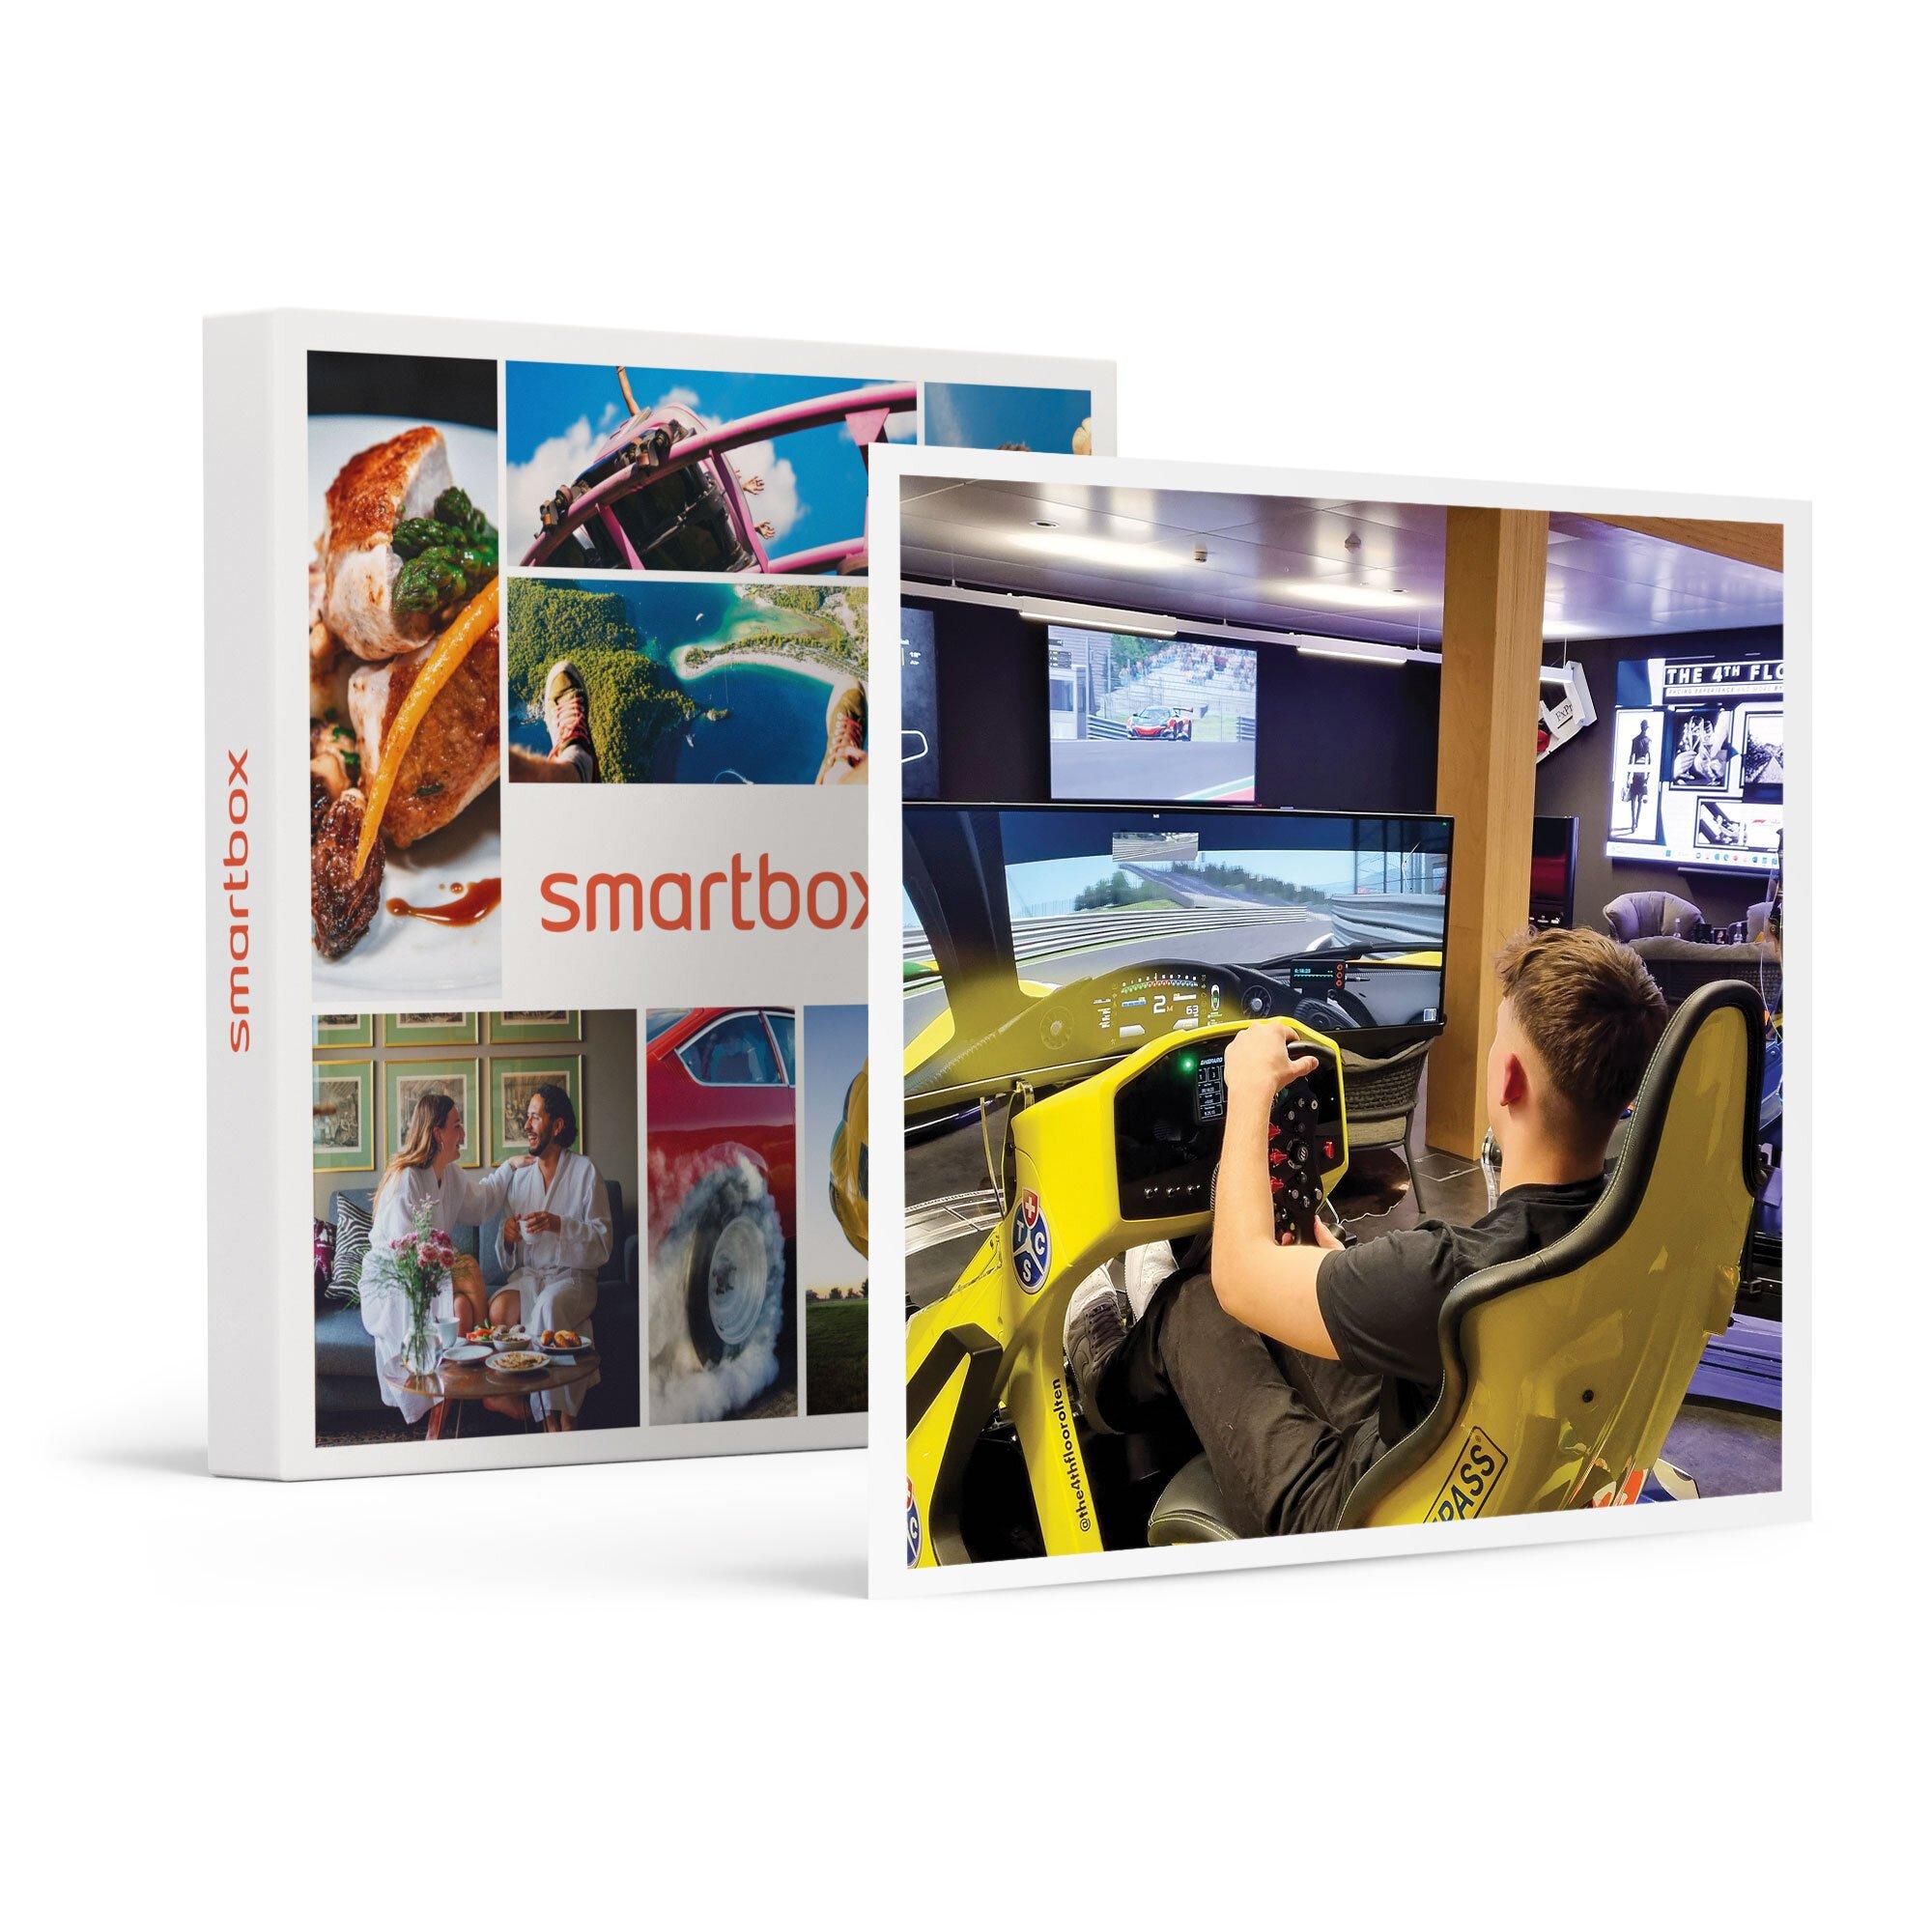 Smartbox  2 adrenalinici giri su simulatore di guida Formula o GT per 2 persone - Cofanetto regalo 